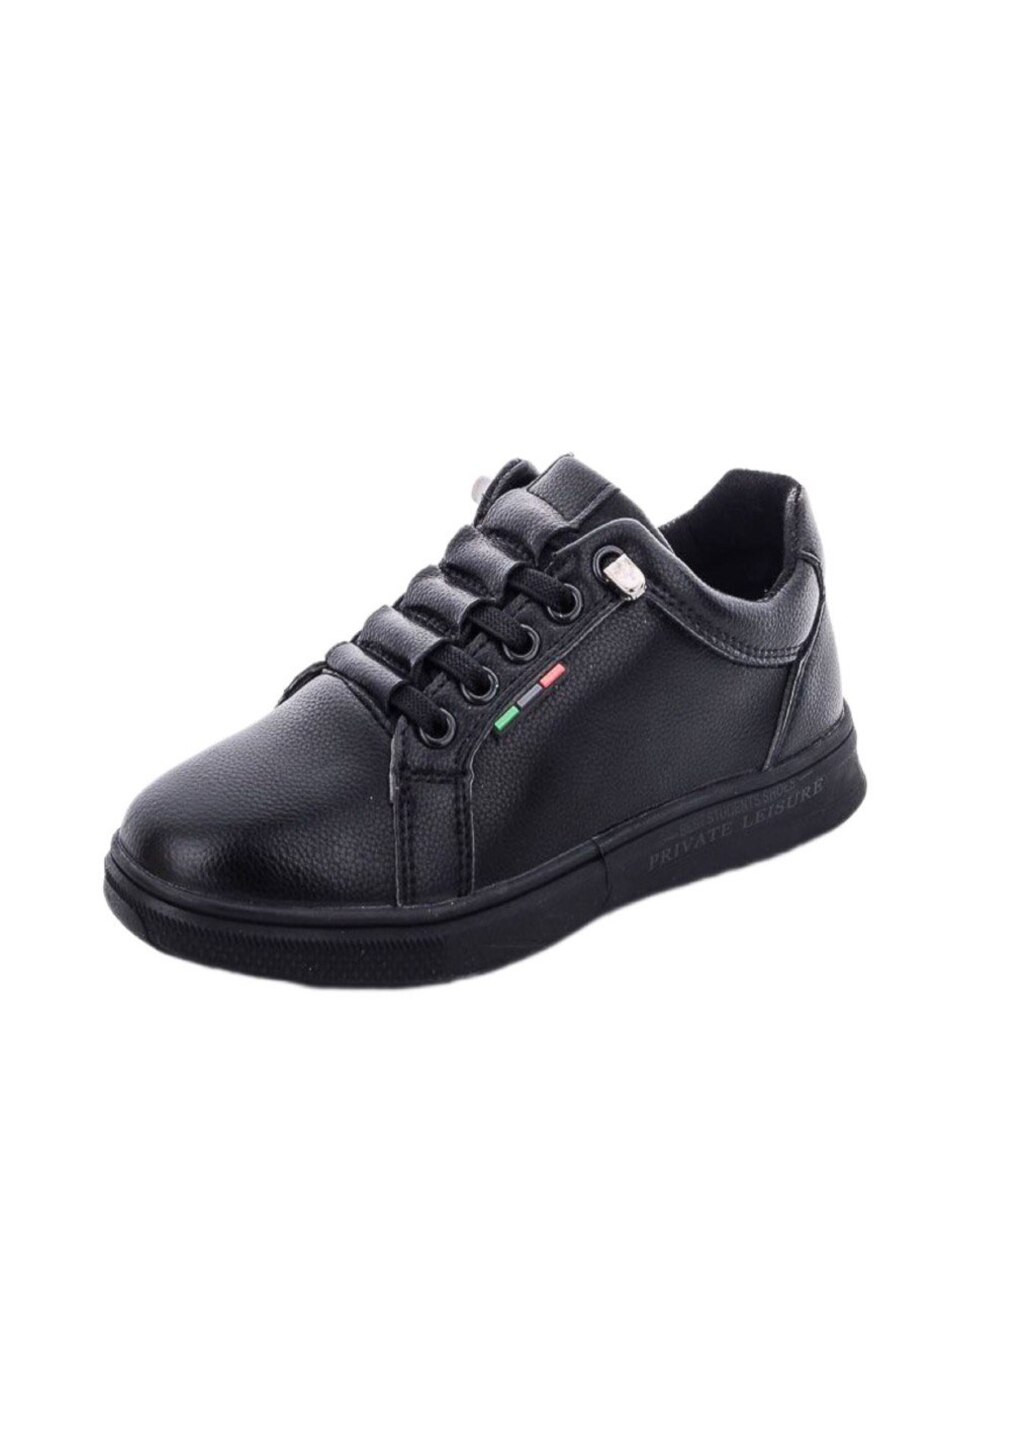 Черные туфли мокасины для мальчика Jong Golf